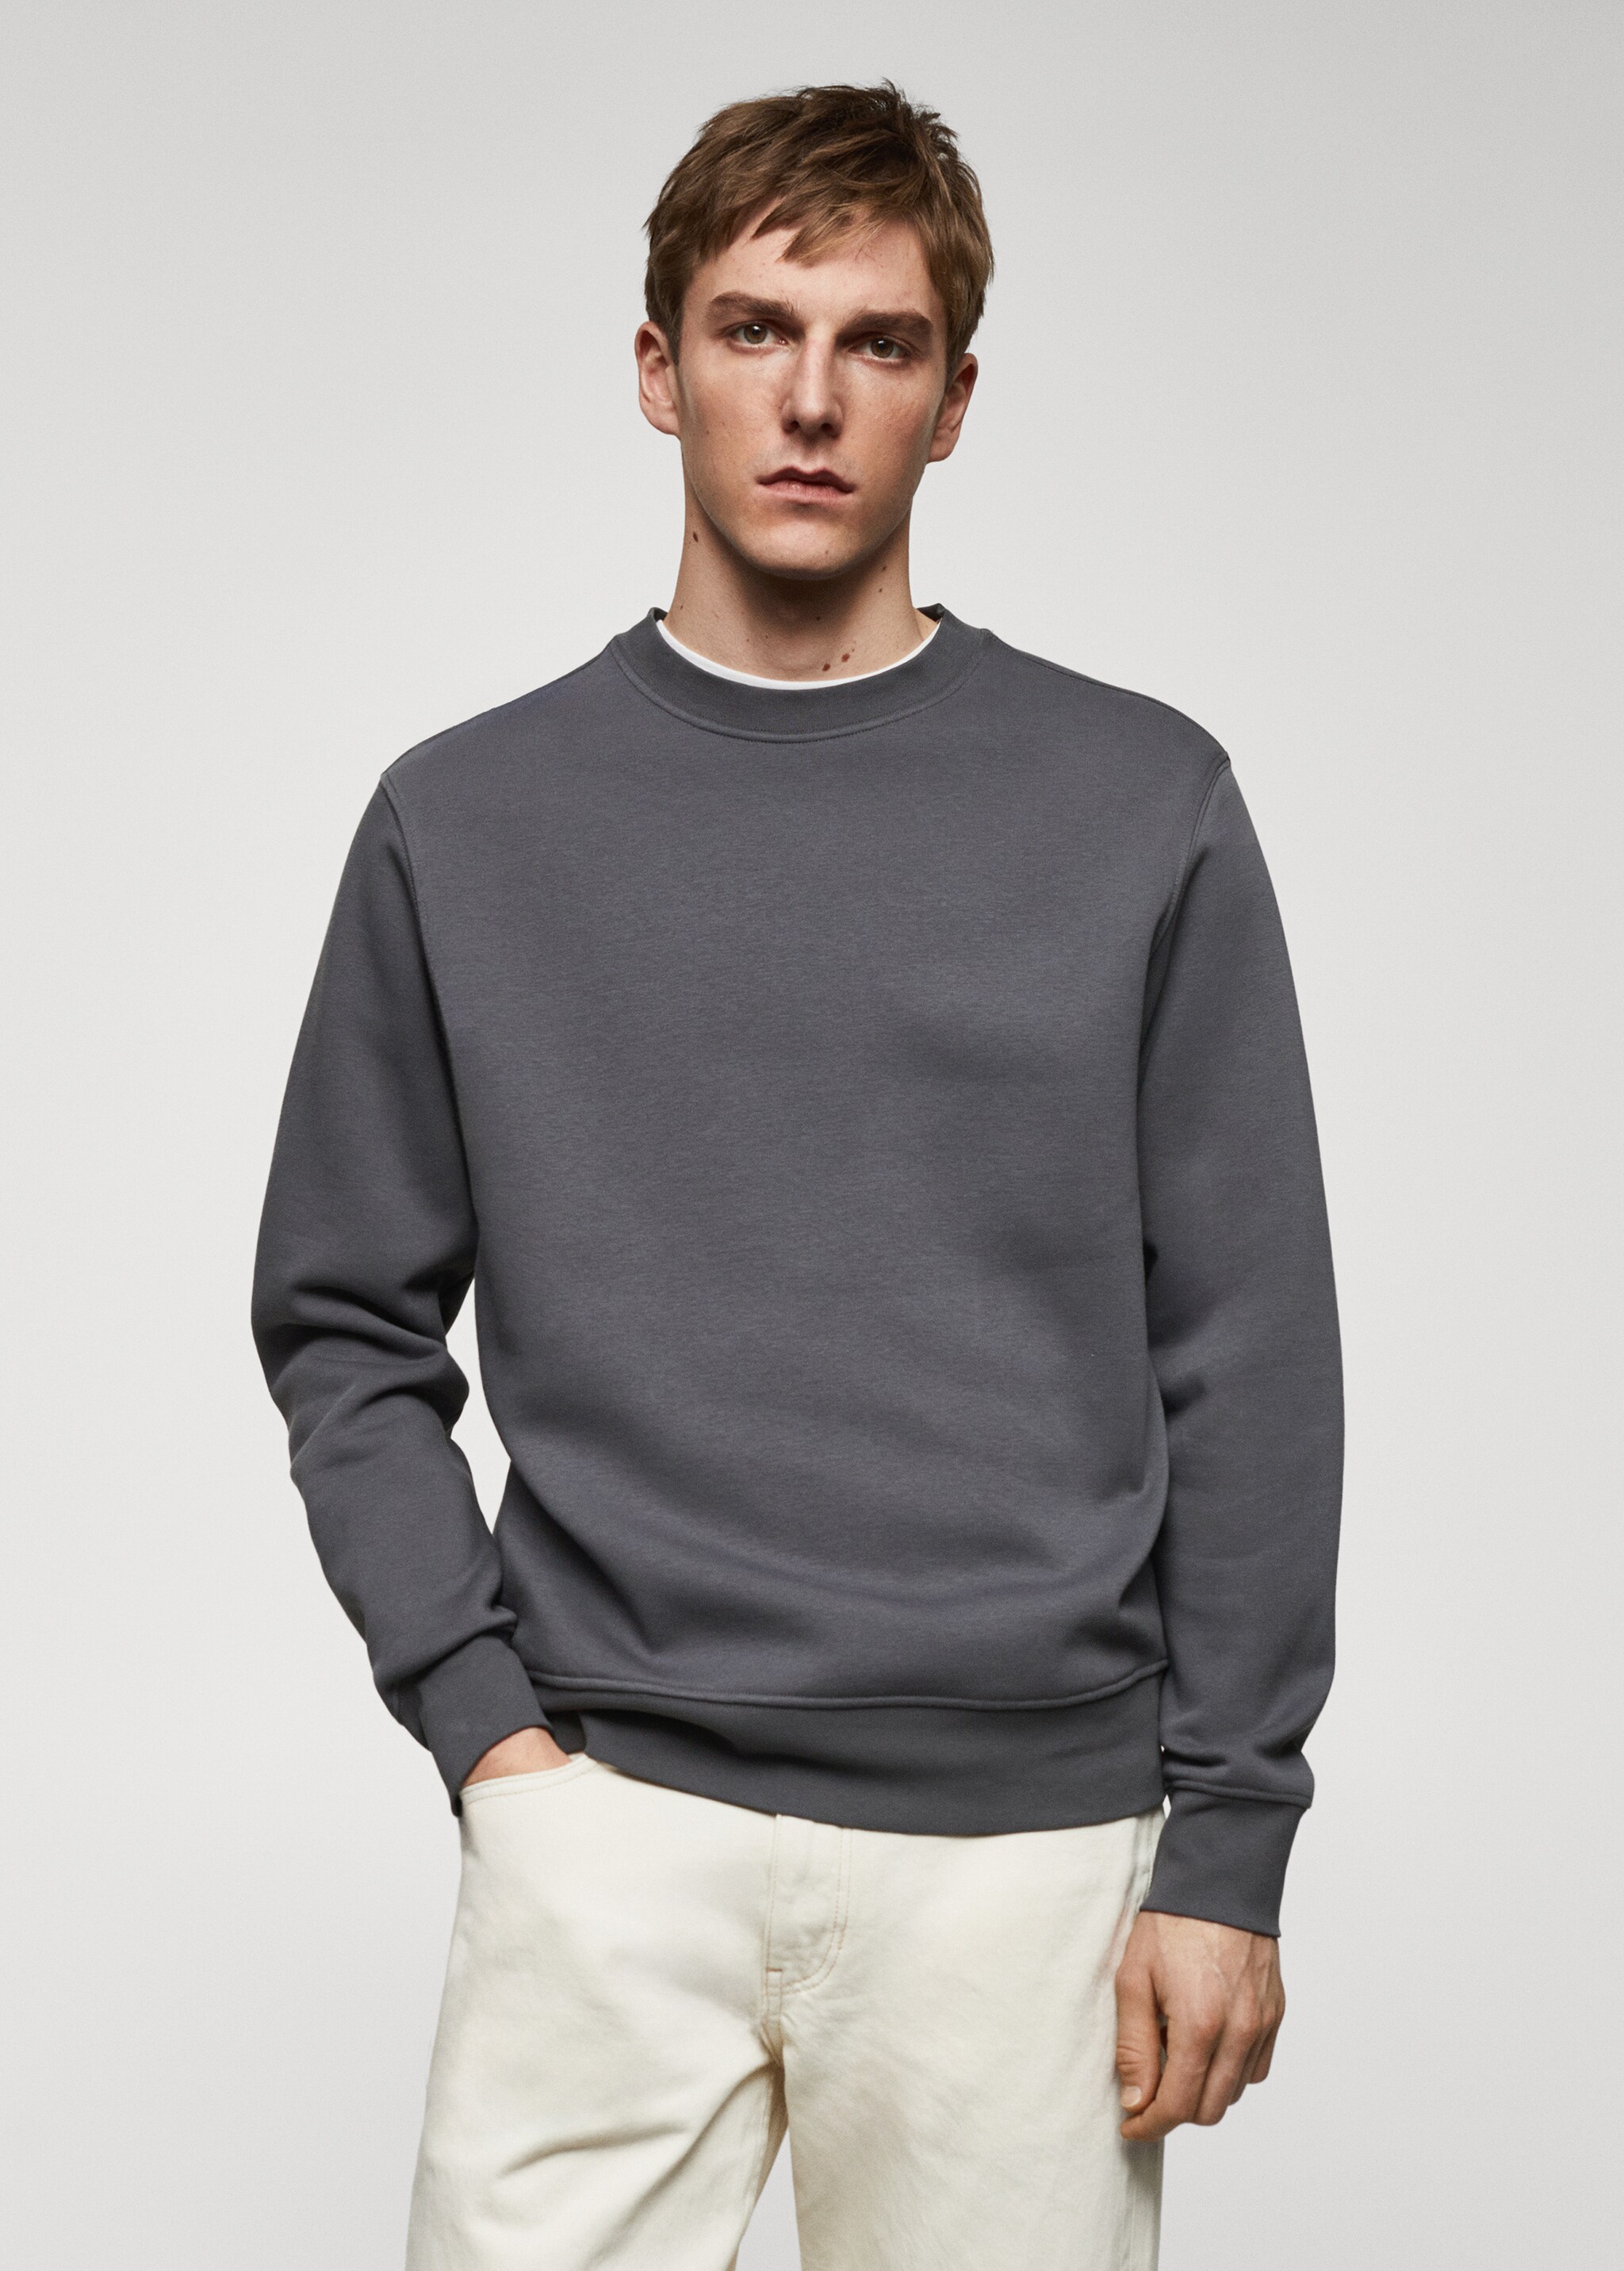 Lightweight cotton sweatshirt - Medium plane